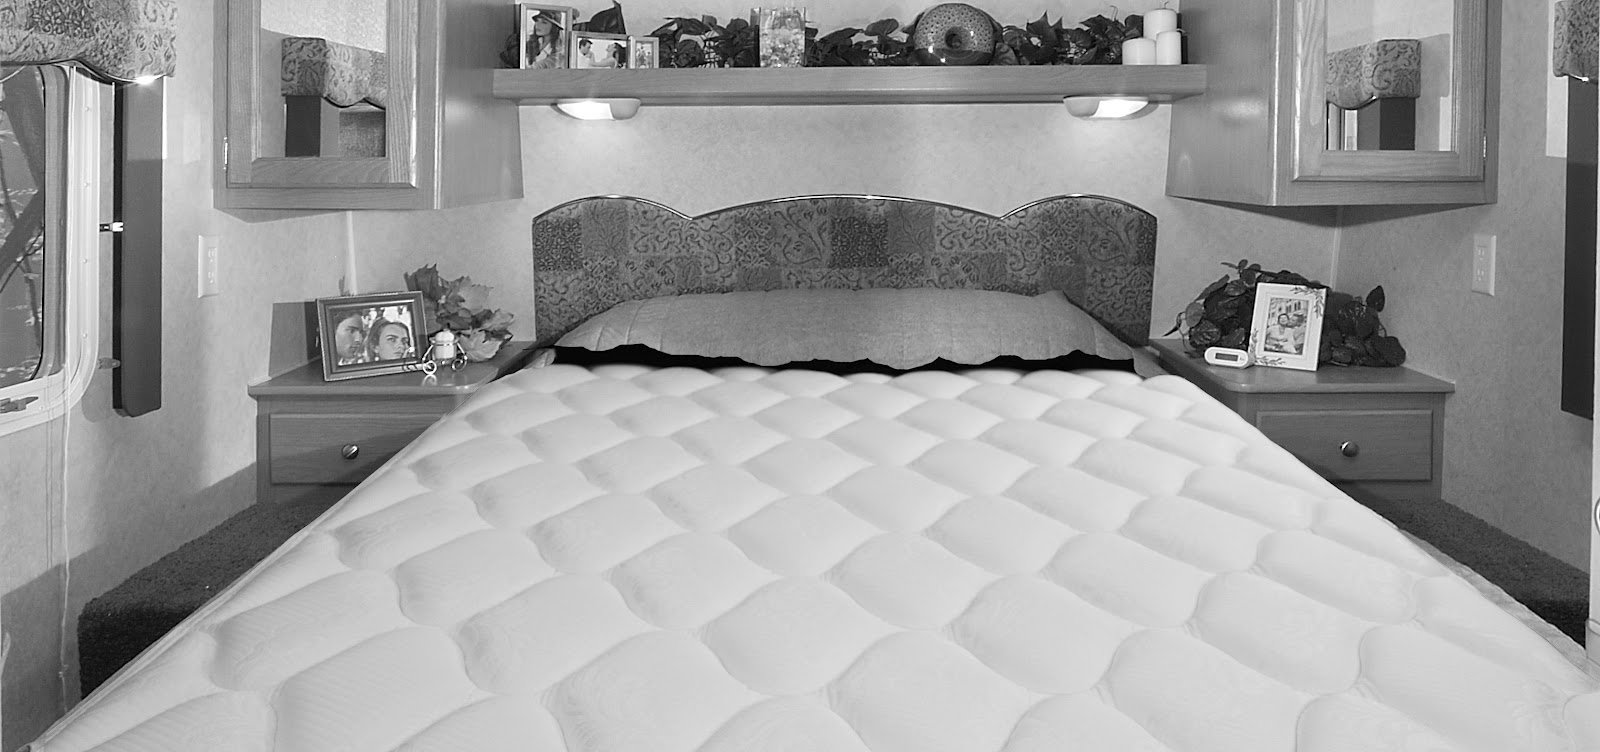 60 by 80 queen mattress